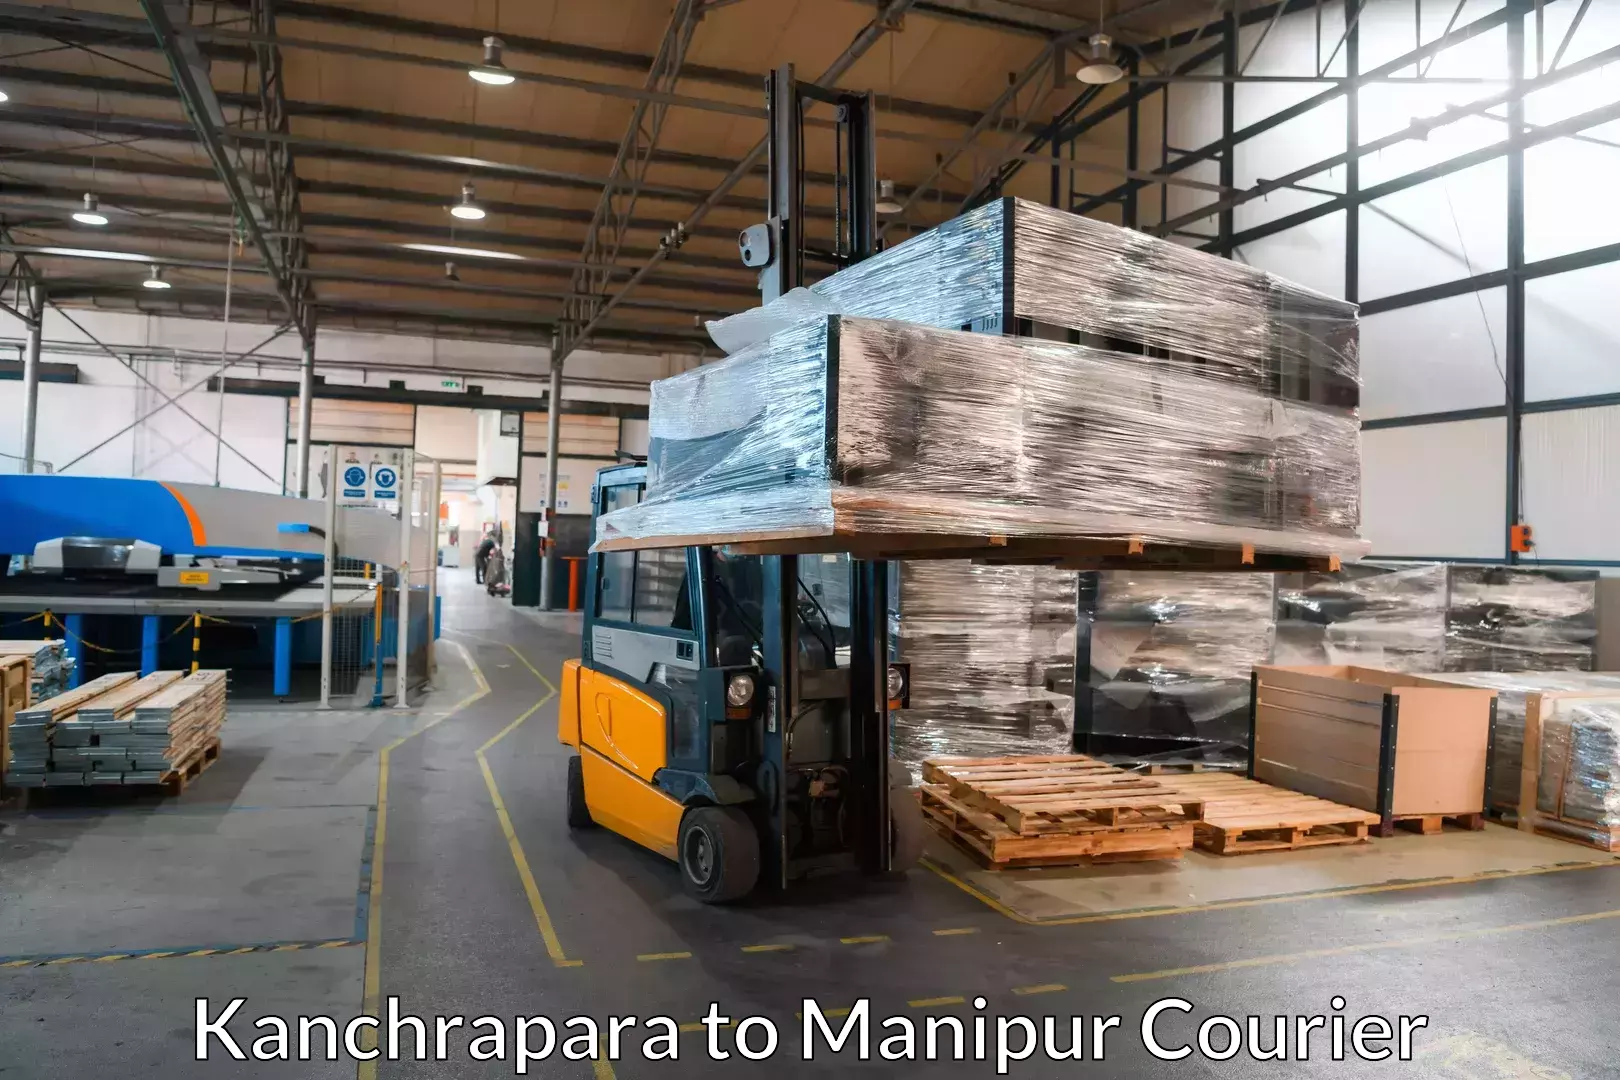 Professional movers and packers Kanchrapara to Senapati